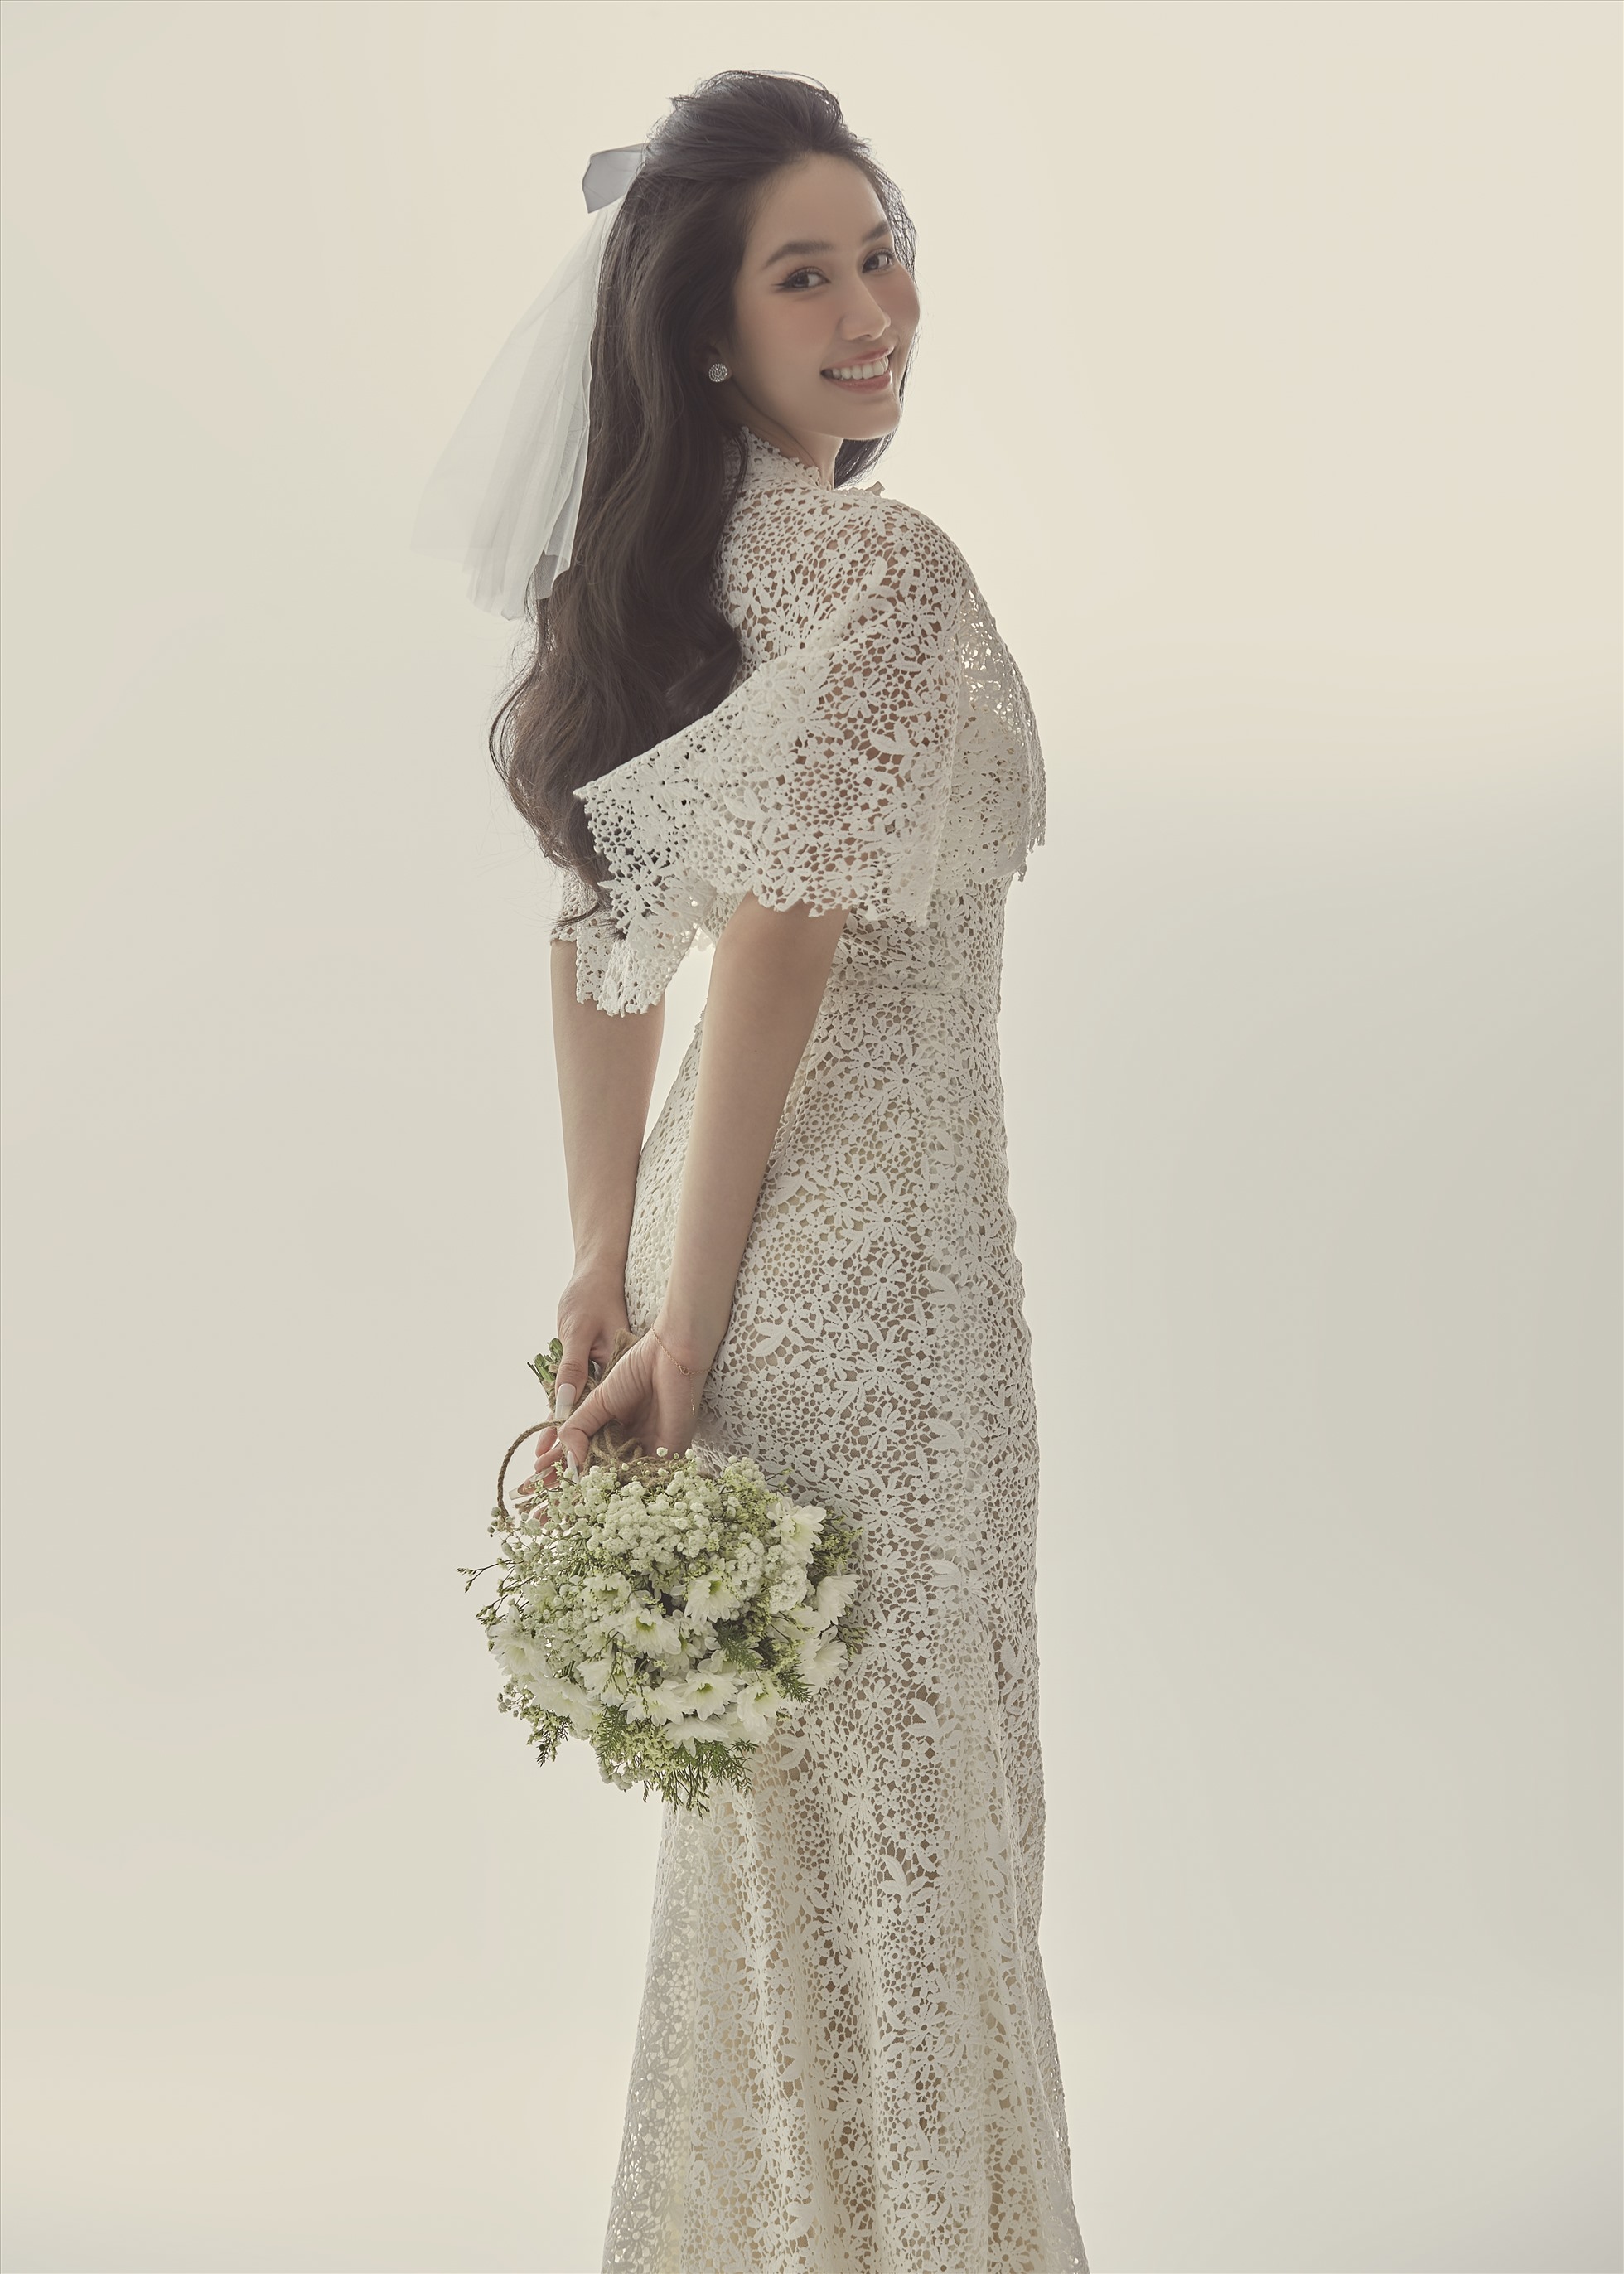 Sau hơn một tháng được bạn trai doanh nhân cầu hôn, mới đây Á hậu Phương Anh đã hé lộ những bức ảnh cưới đầu tiên của mình. Trong đó, cô nàng diện cho mình một chiếc váy ren trắng tinh khiết, mang khuynh hướng cổ điển, tinh tế của NTK Lê Thanh Hòa.